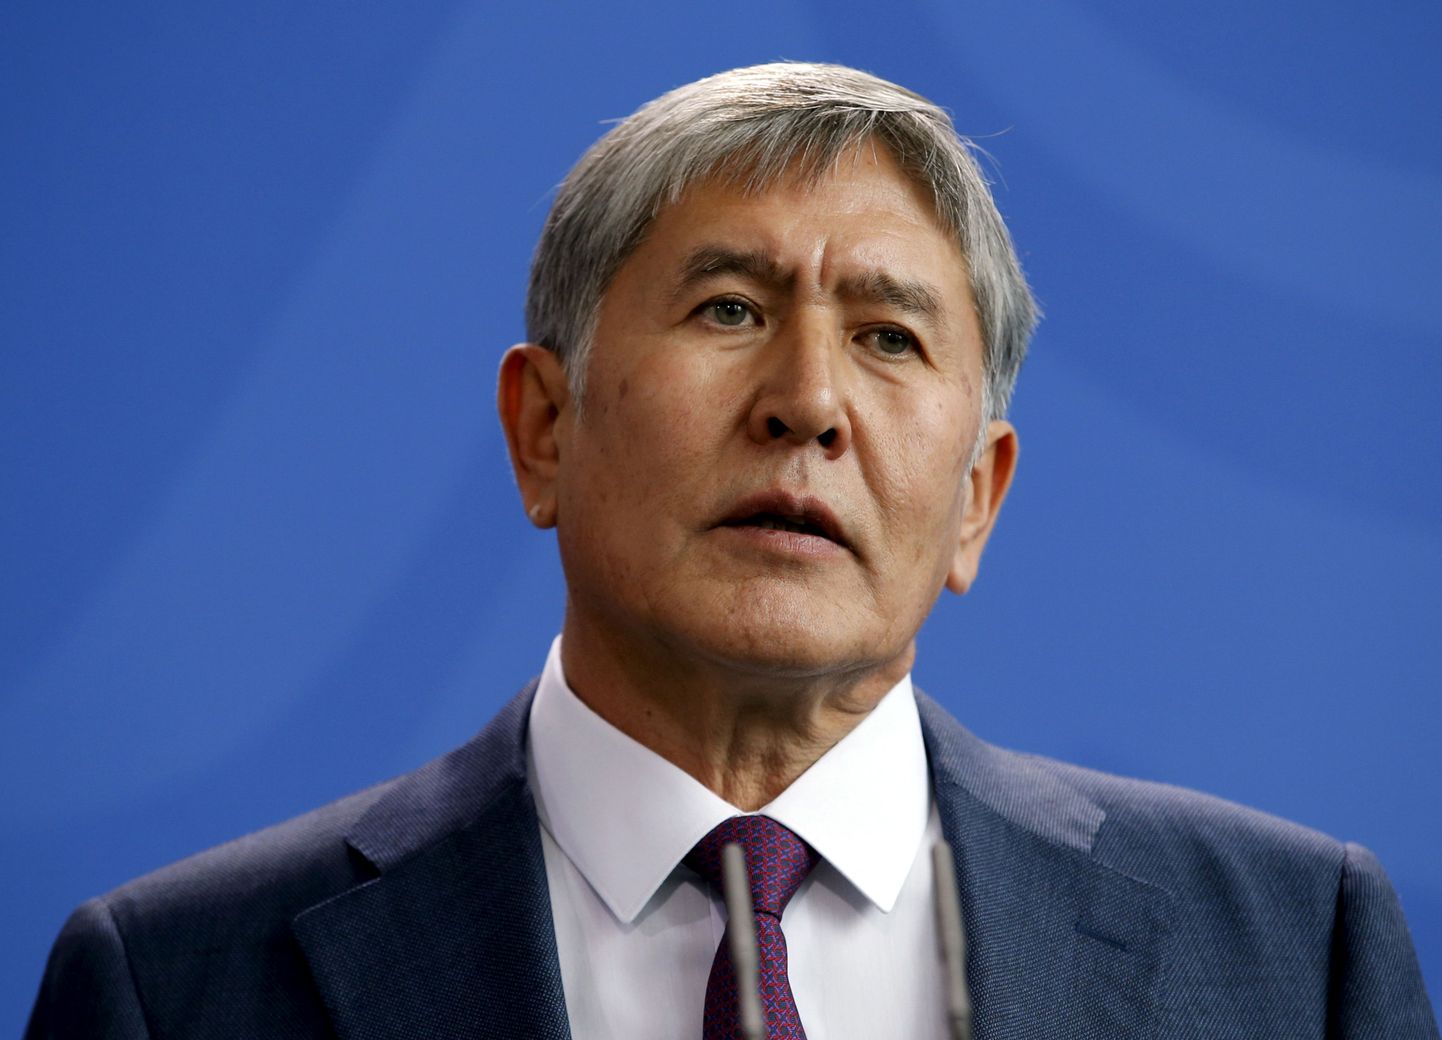 Kõrgõzstani president Almazbek Atambajev